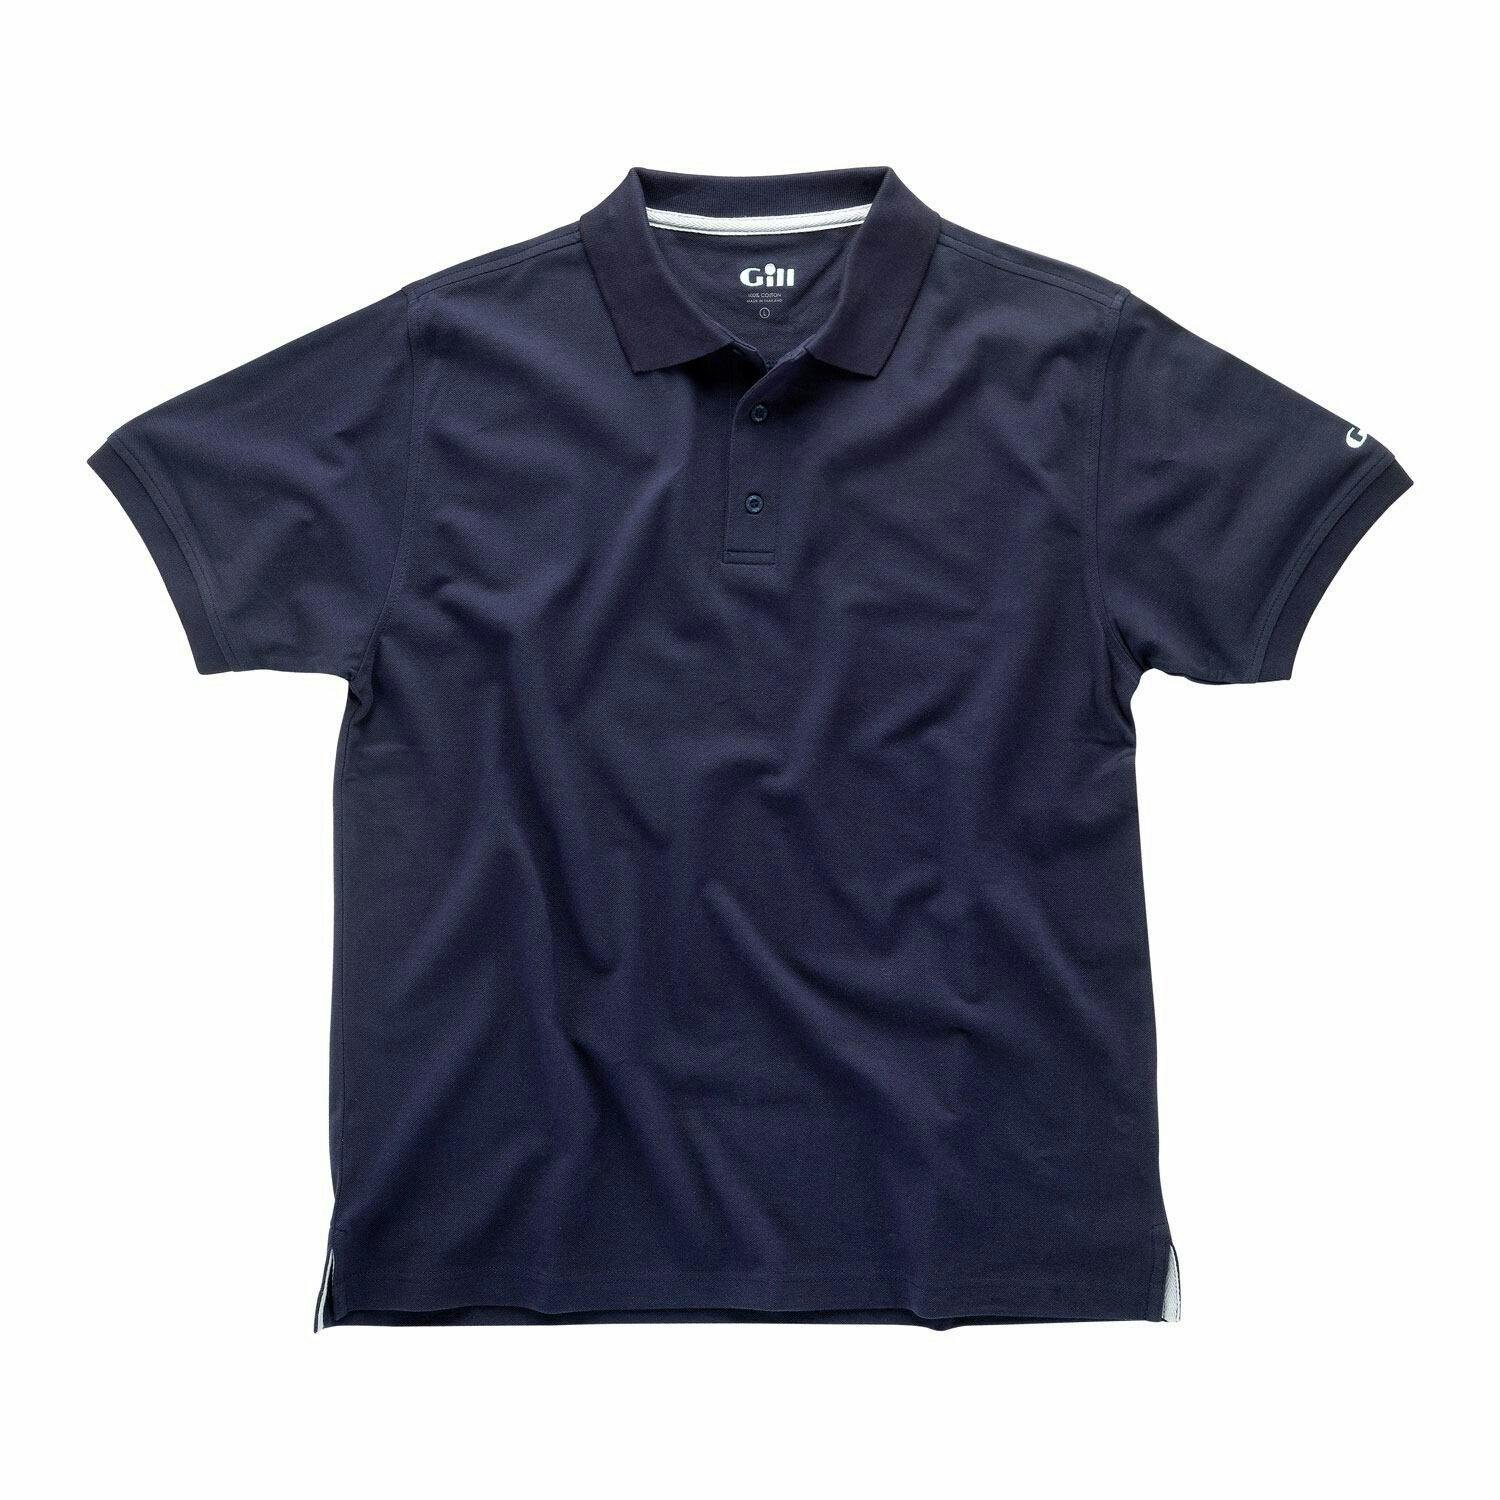 E015 polo shirt Gill navy str s